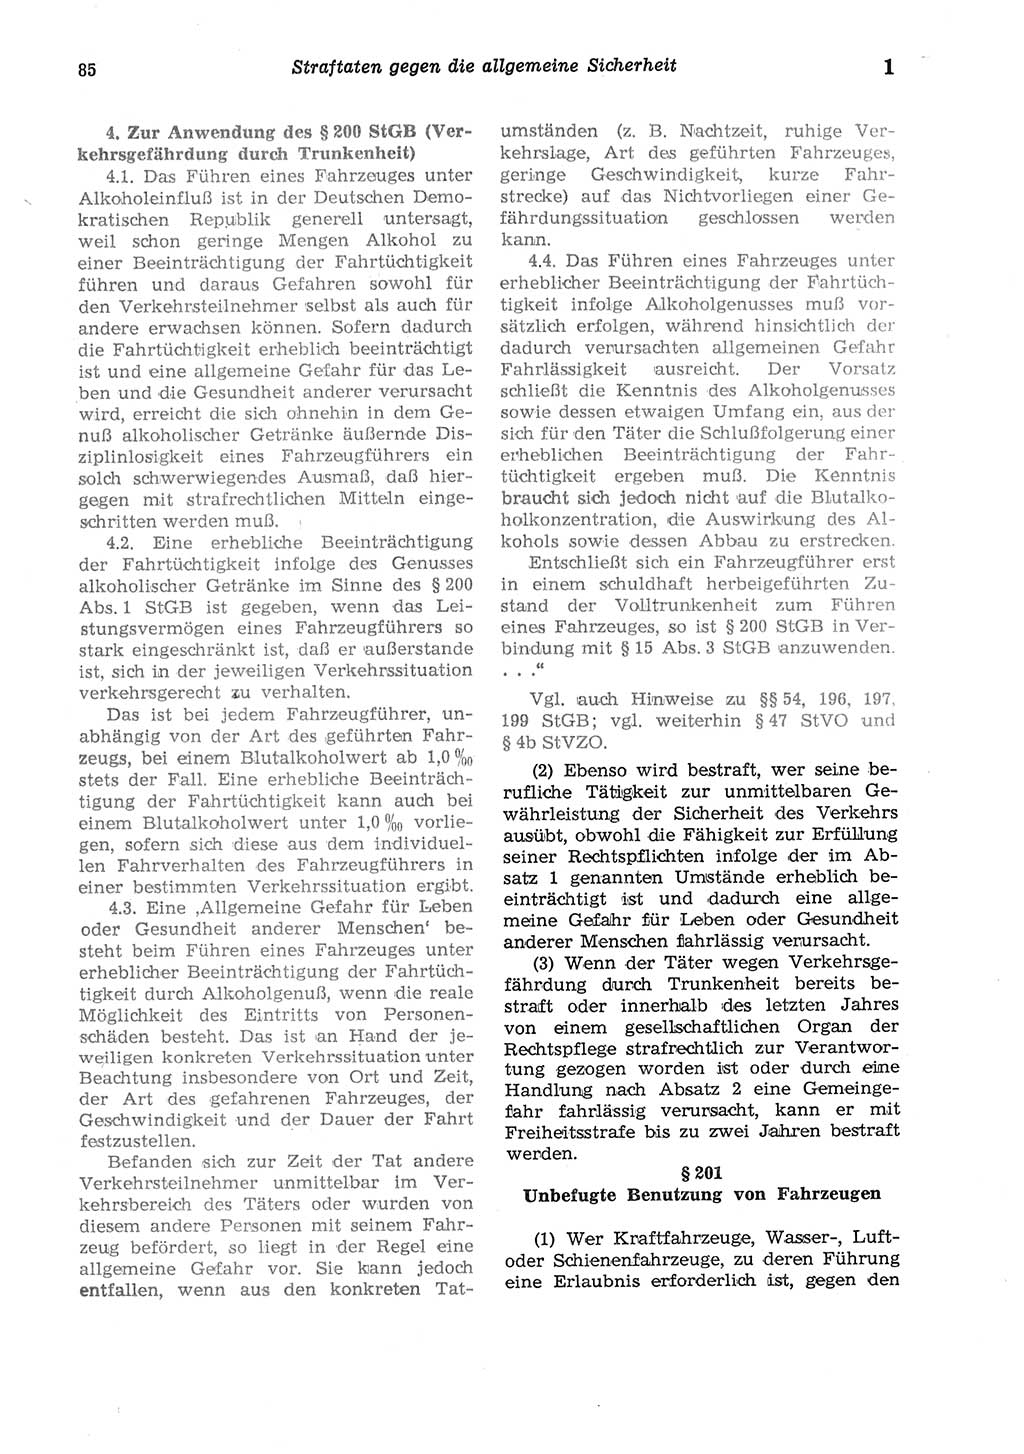 Strafgesetzbuch (StGB) der Deutschen Demokratischen Republik (DDR) und angrenzende Gesetze und Bestimmungen 1975, Seite 85 (StGB DDR Ges. Best. 1975, S. 85)